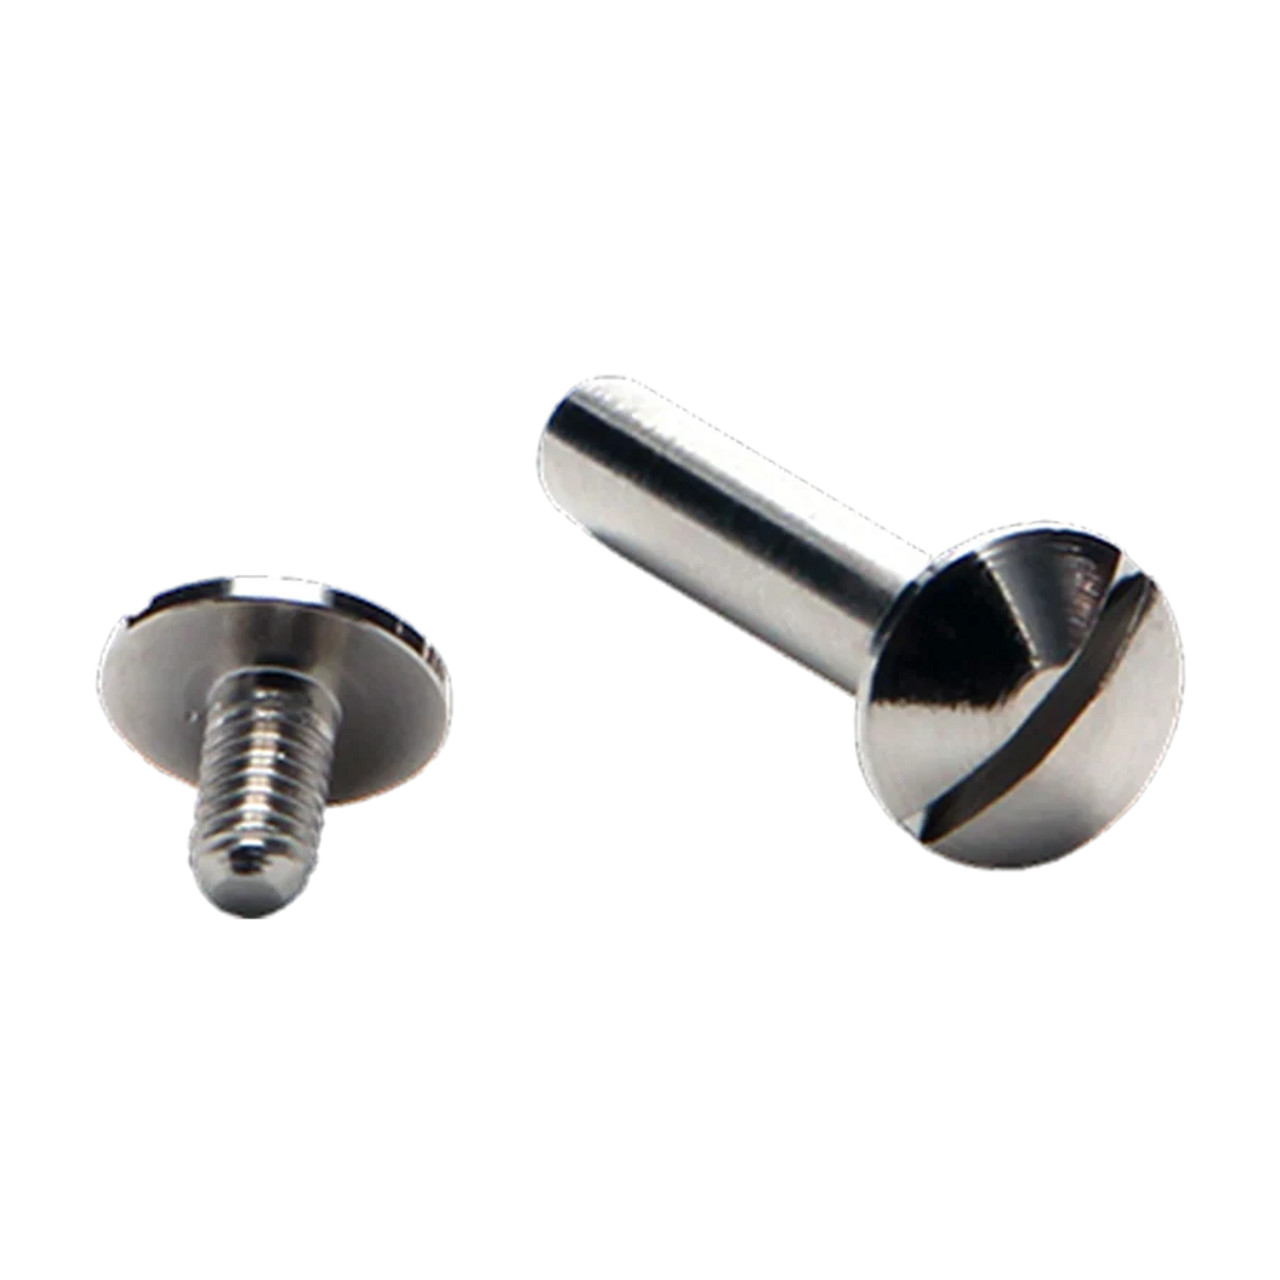 Tornator CT-006/ CT-007 Pin & Screw